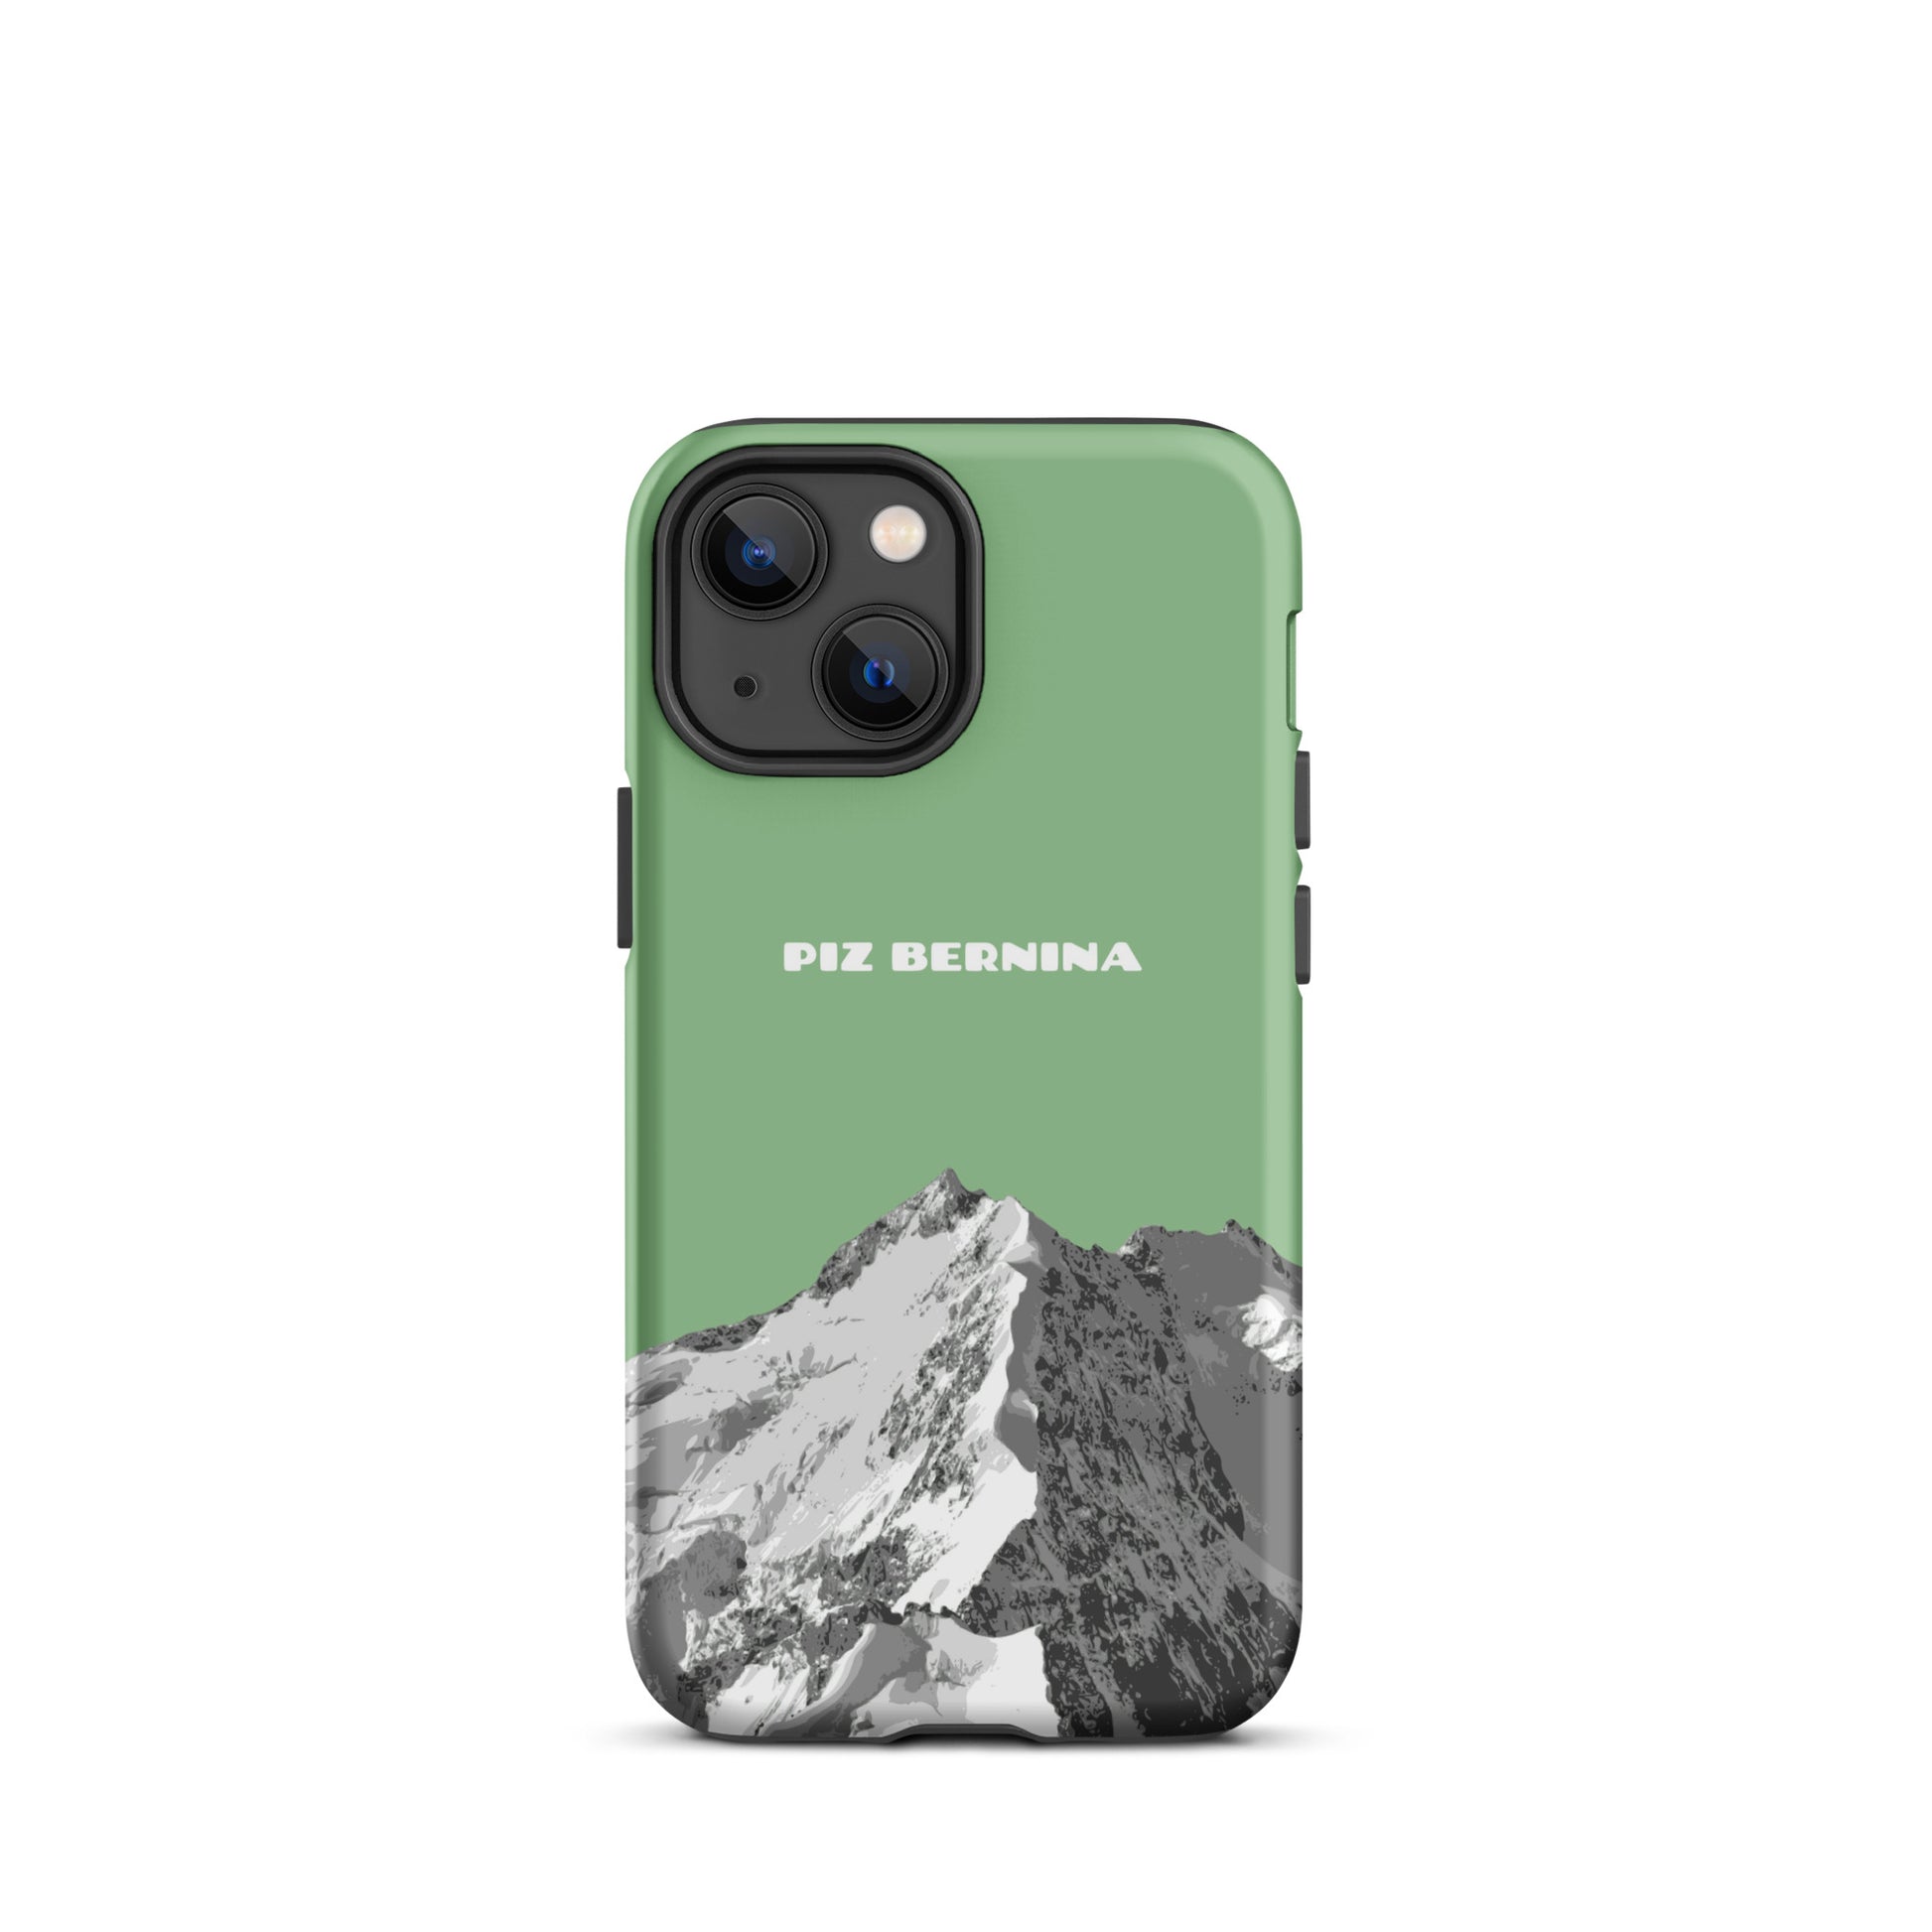 Hülle für das iPhone 13 Mini von Apple in der Farbe Hellgrün, dass den Piz Bernina in Graubünden zeigt.